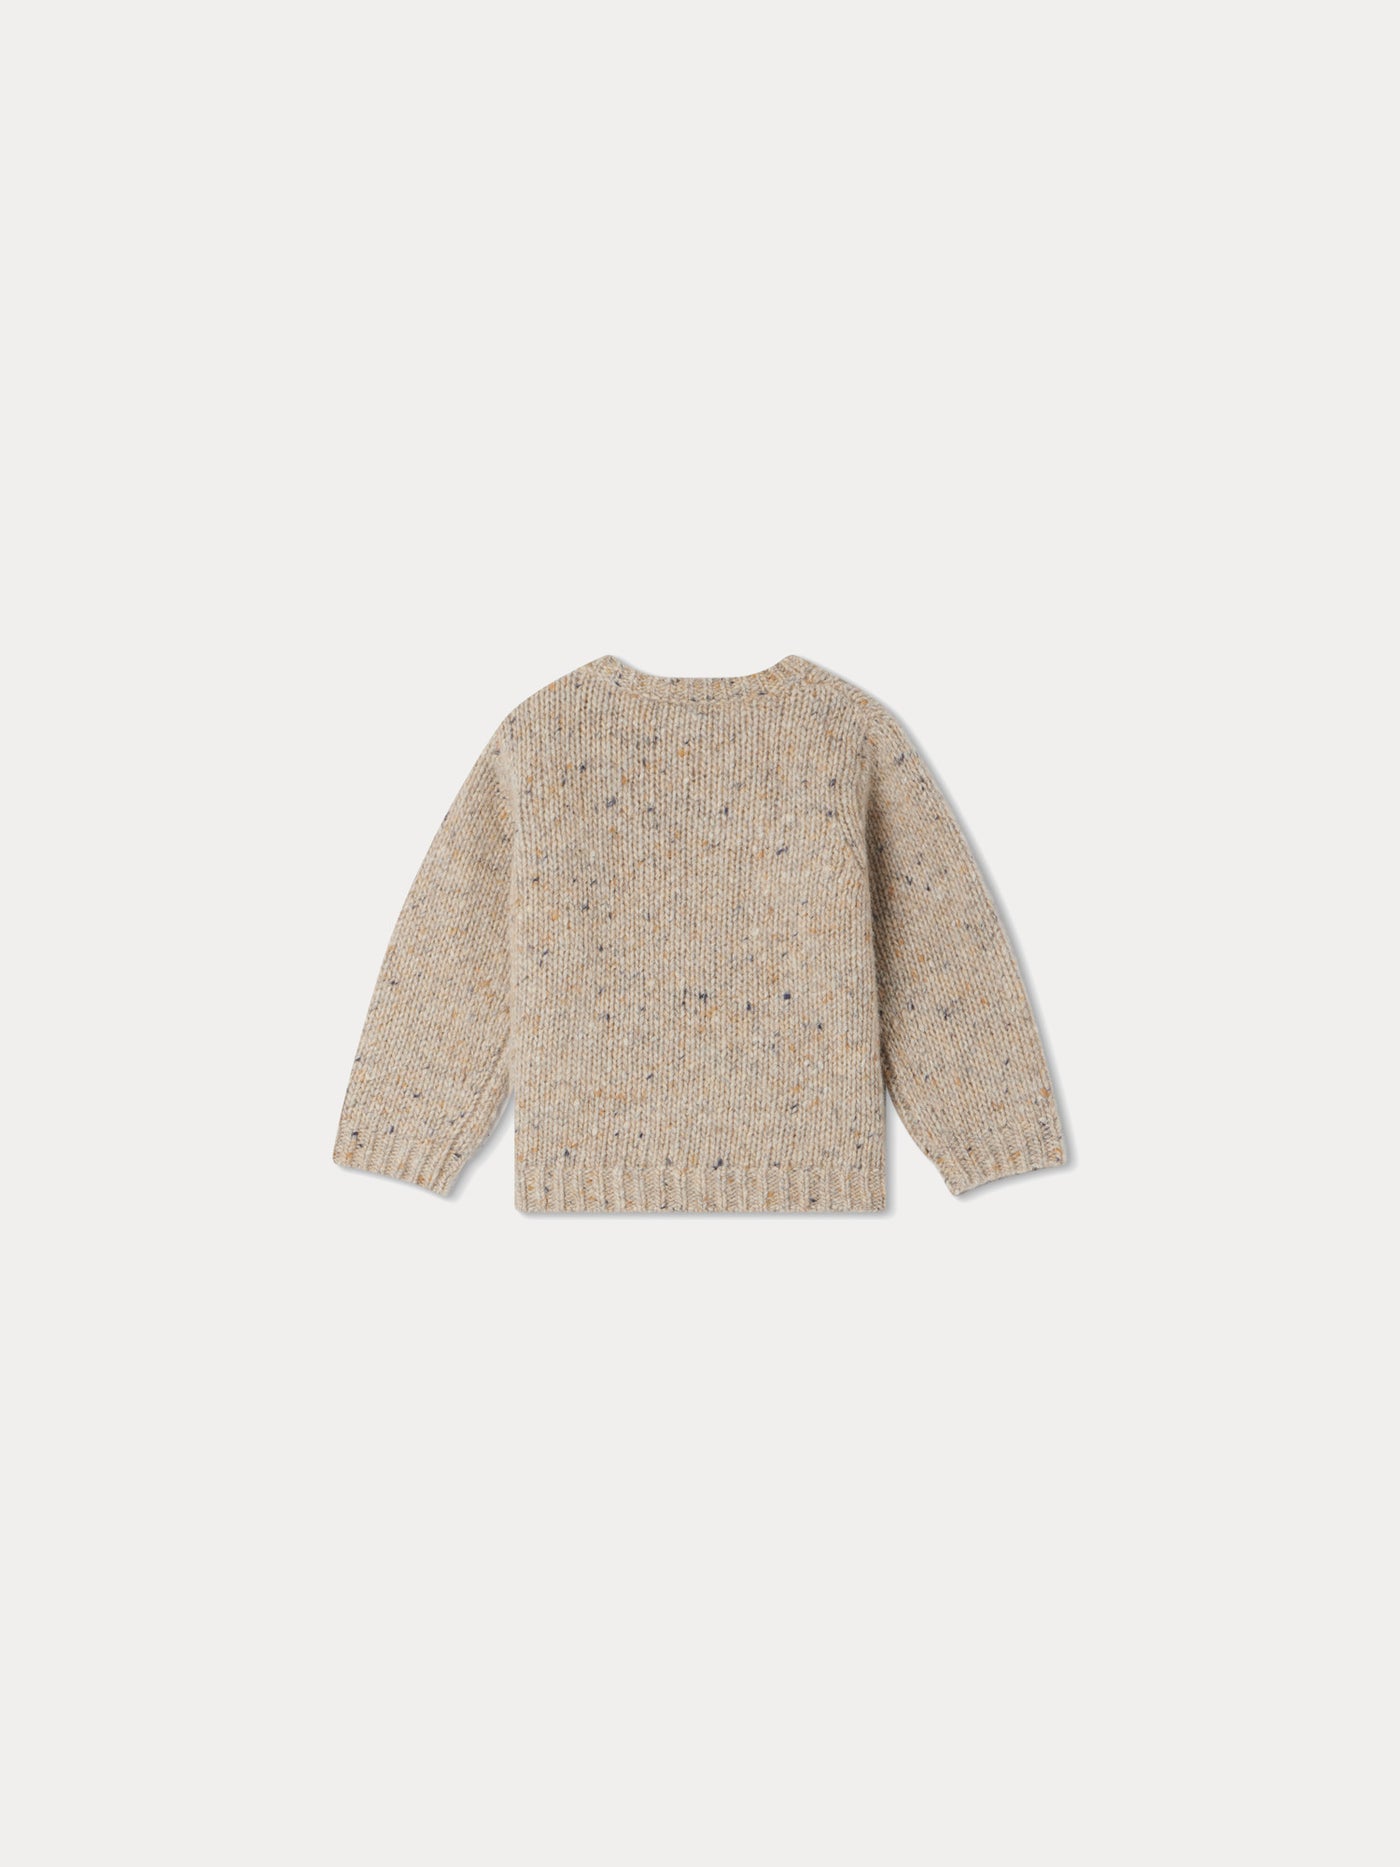 Blumaro Sweater mottled grey